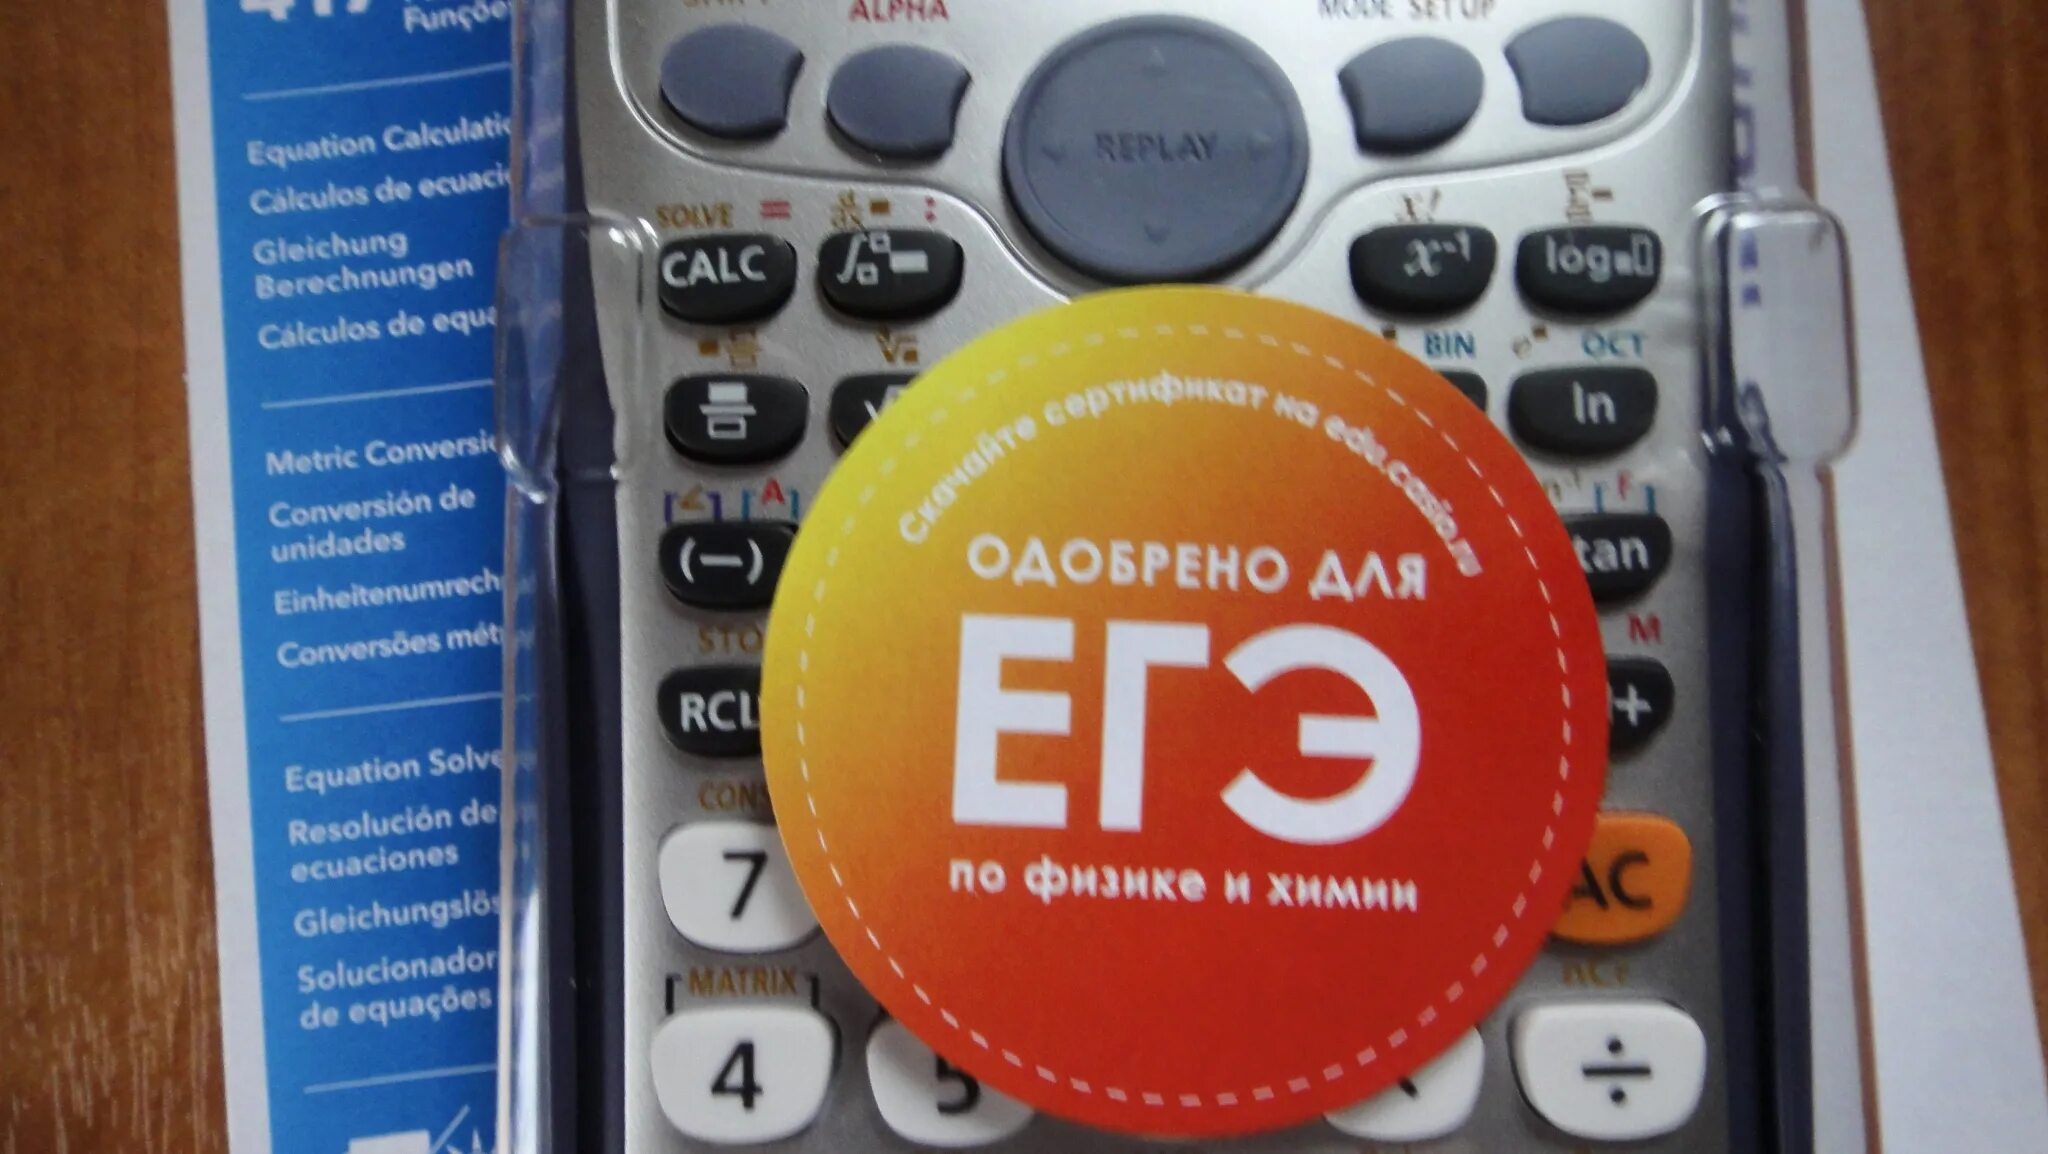 Калькулятор для ЕГЭ. Калькулятор одобренный для ЕГЭ. Калькулятор для ЕГЭ по физике. Калькулятор на егэ можно брать